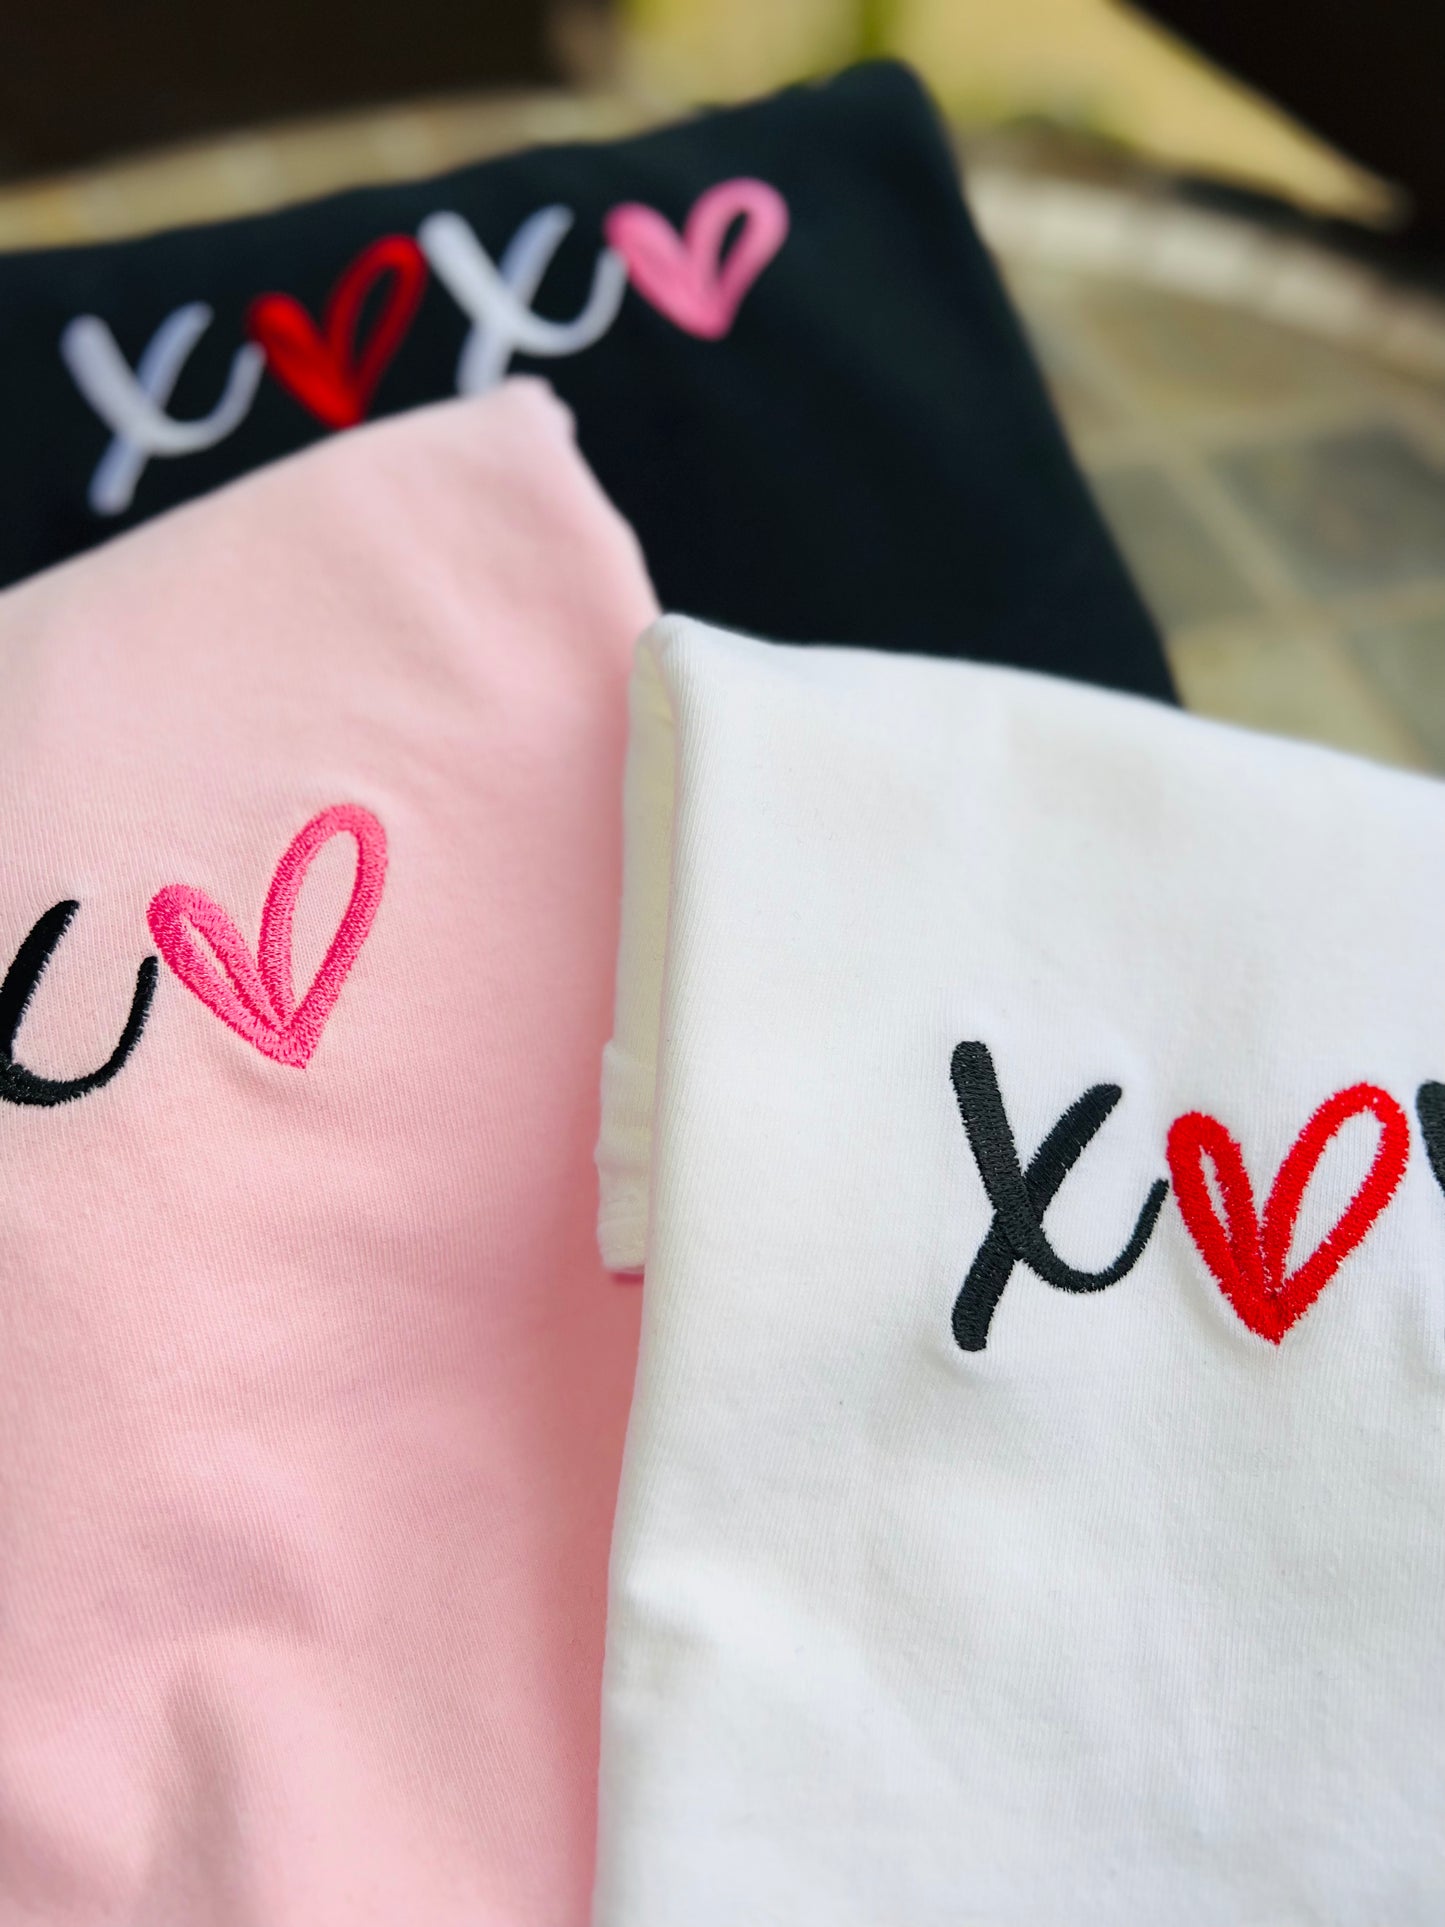 XOXO Embroidered Sweatshirt - Youth